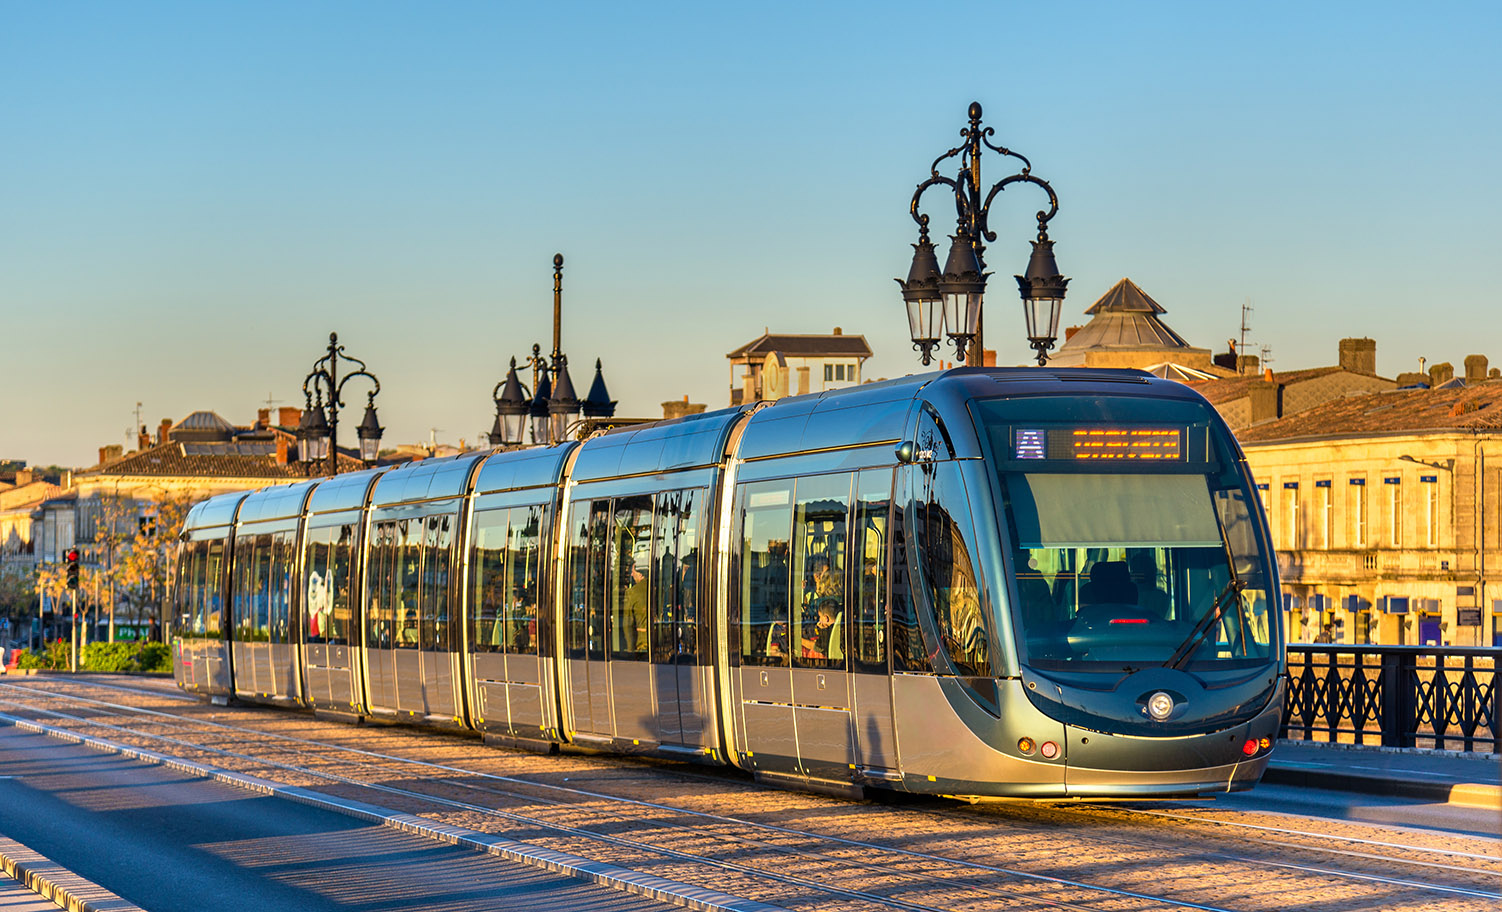 Tram in Bordeaux, France